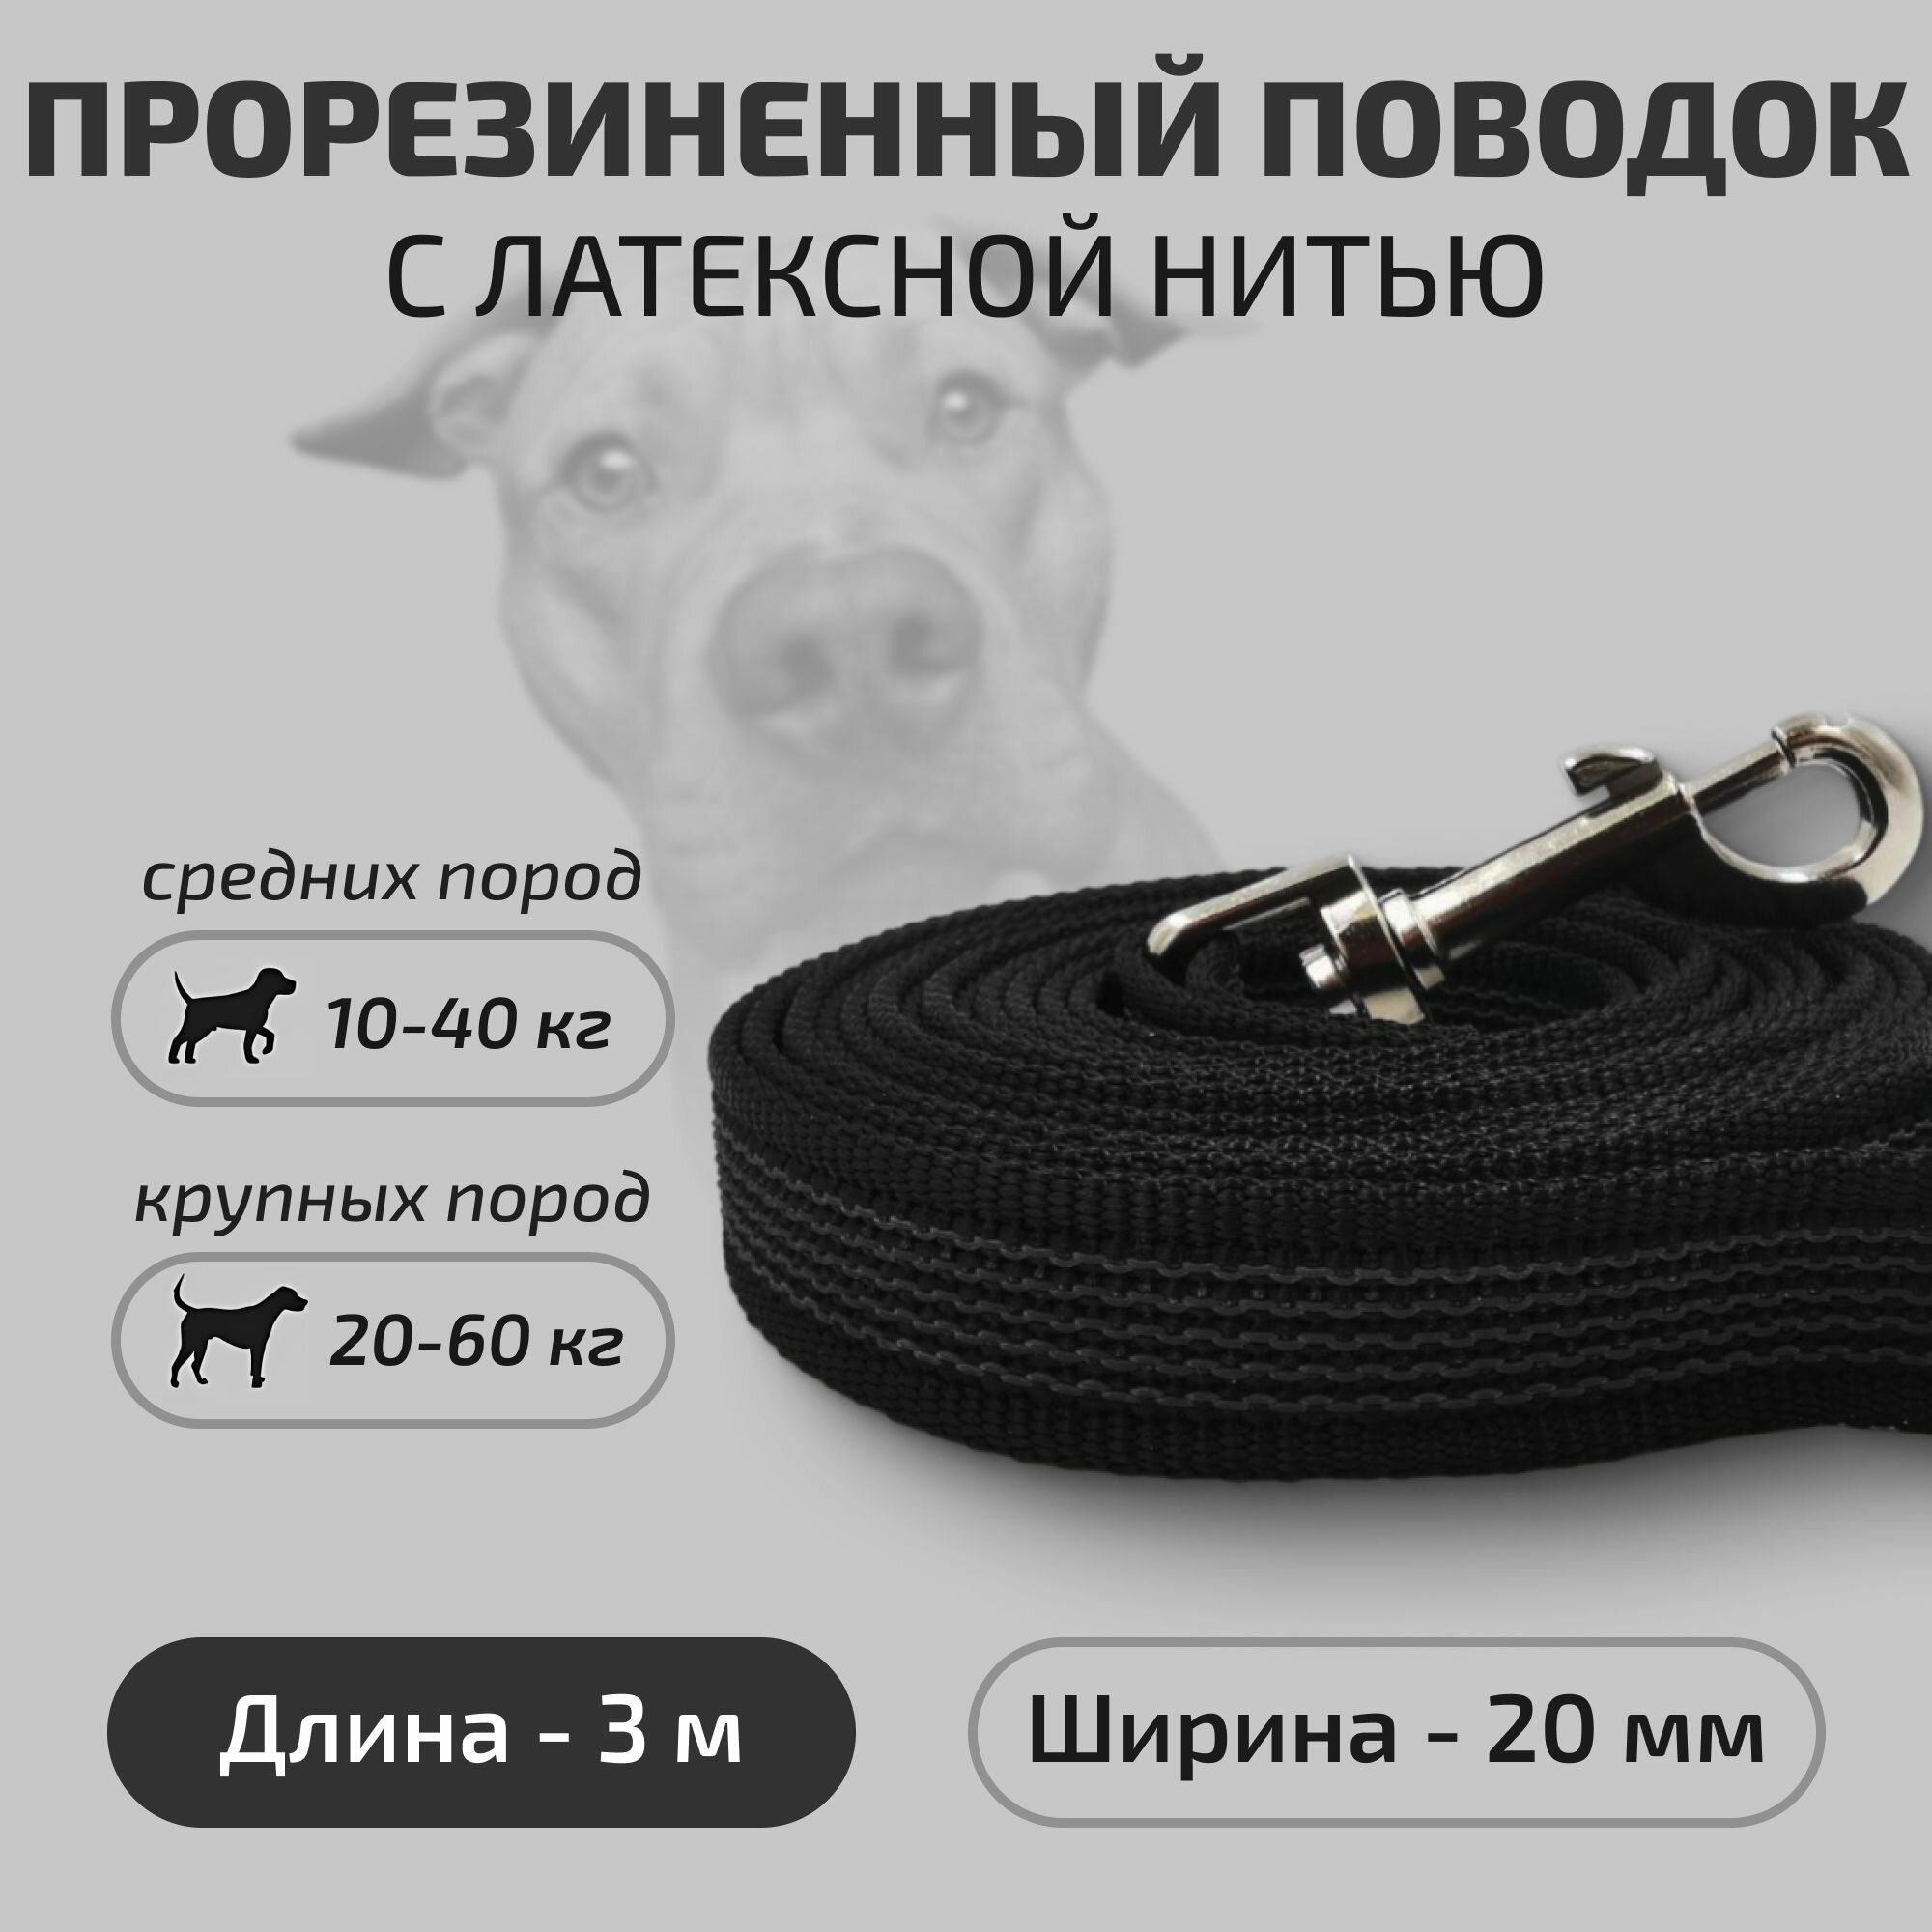 Поводок для собак Povodki Shop с латексной нитью, черный, ширина 20 мм, длина 3 м